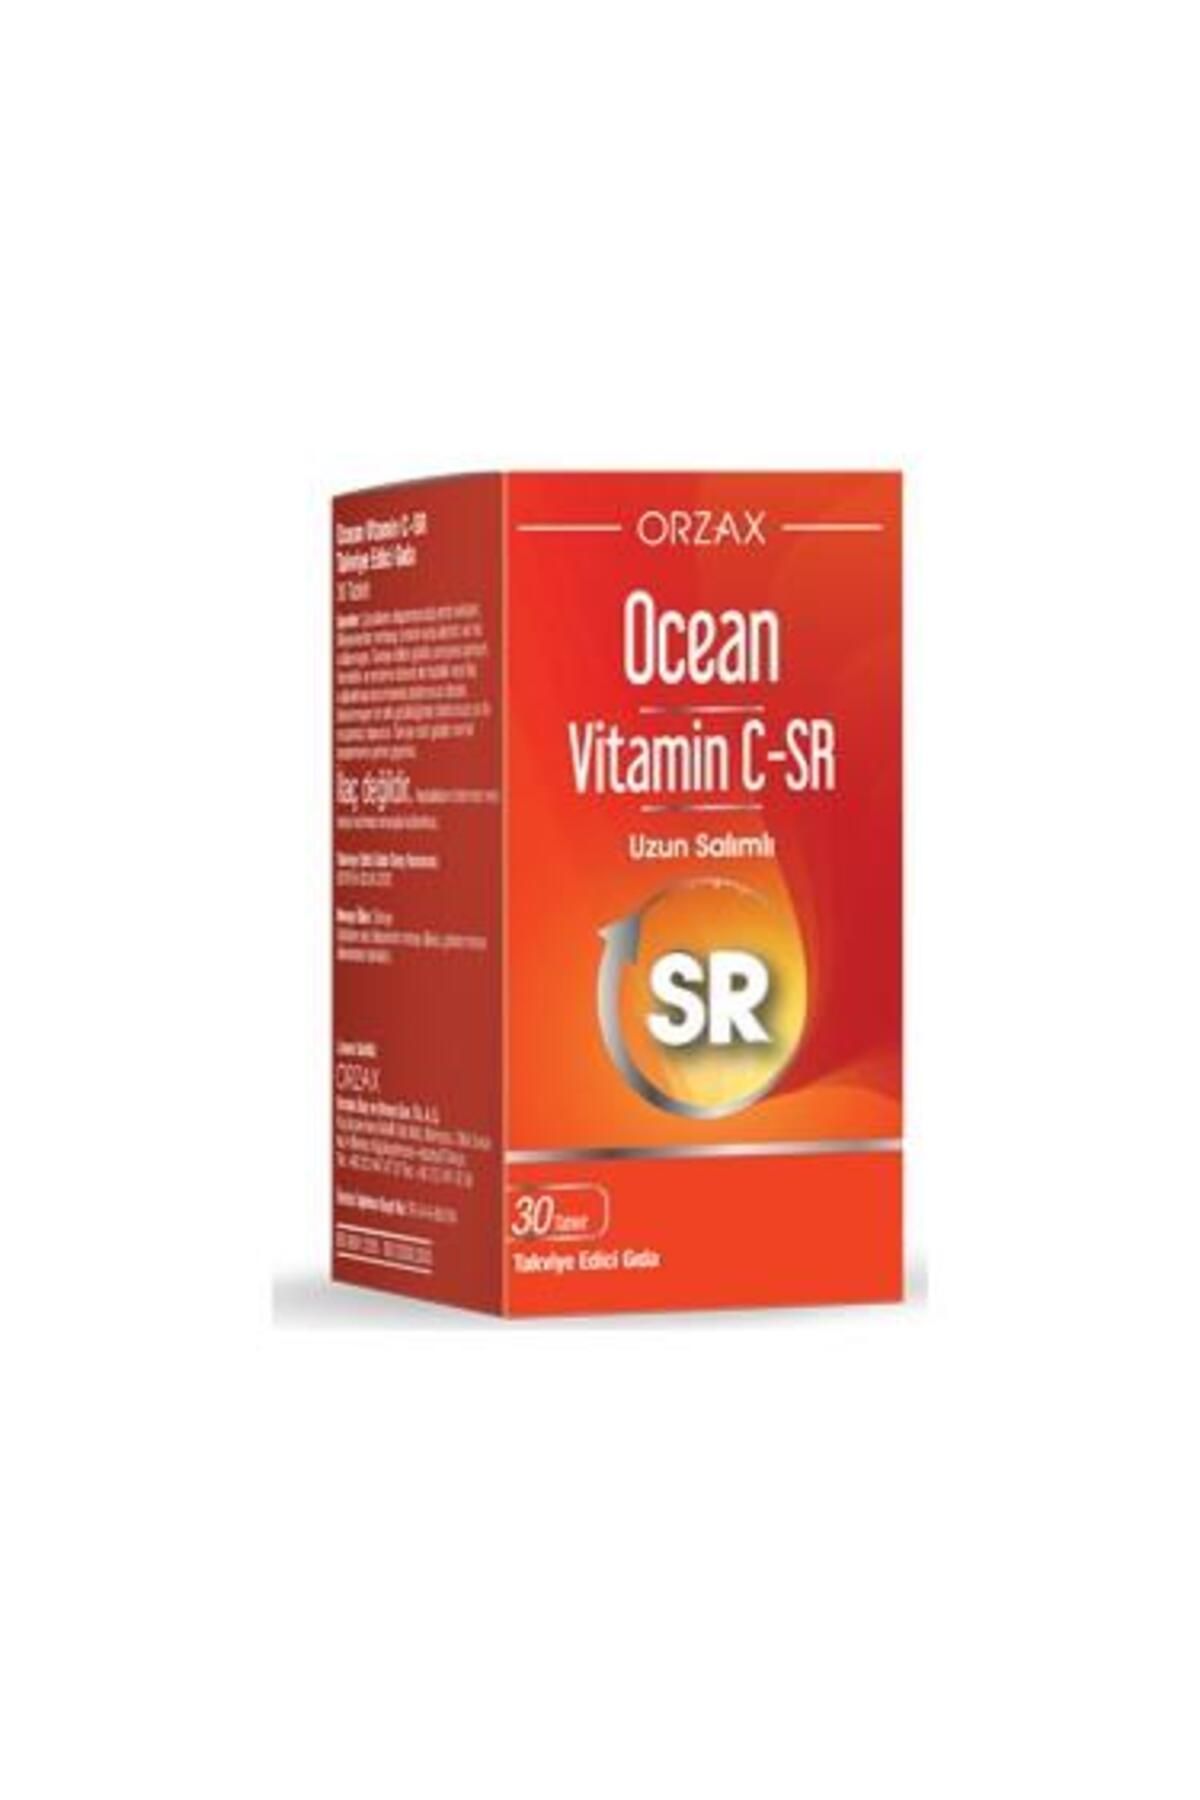 Ocean Orzax Ocean Vitamin C-SR 30 Tablet